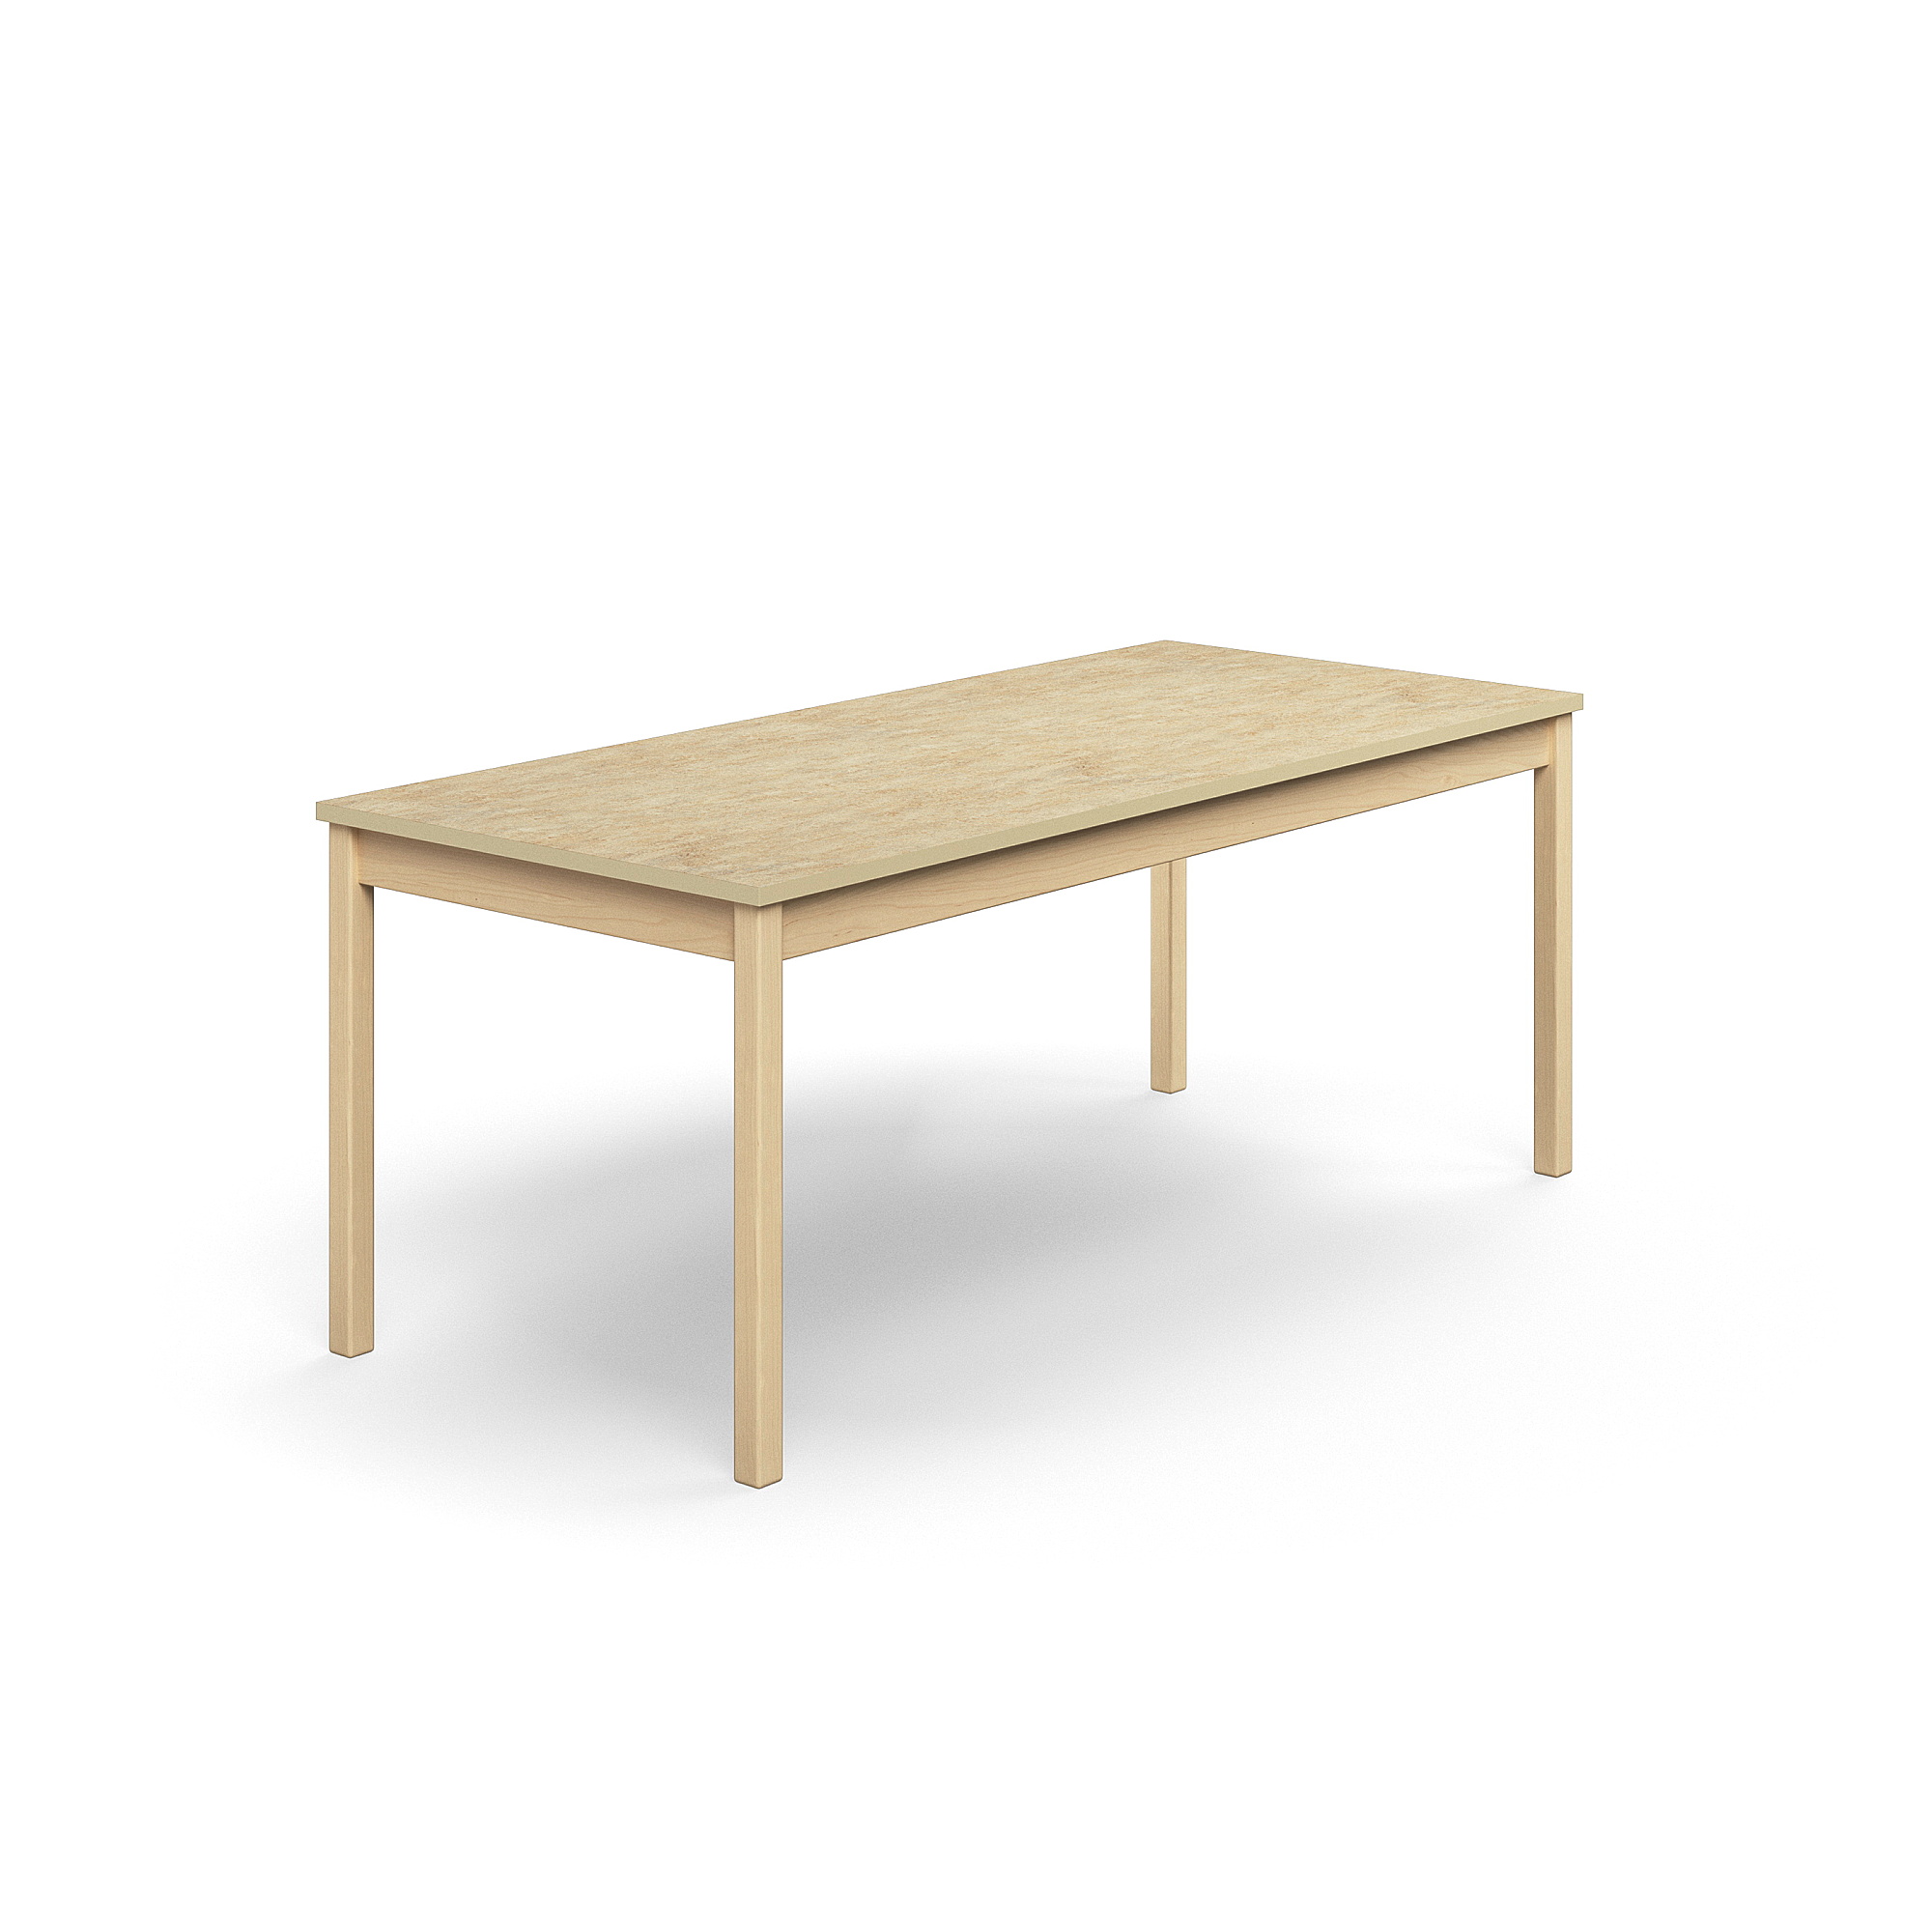 Stůl DECIBEL, 1800x800x720 mm, akustické linoleum, bříza/béžová